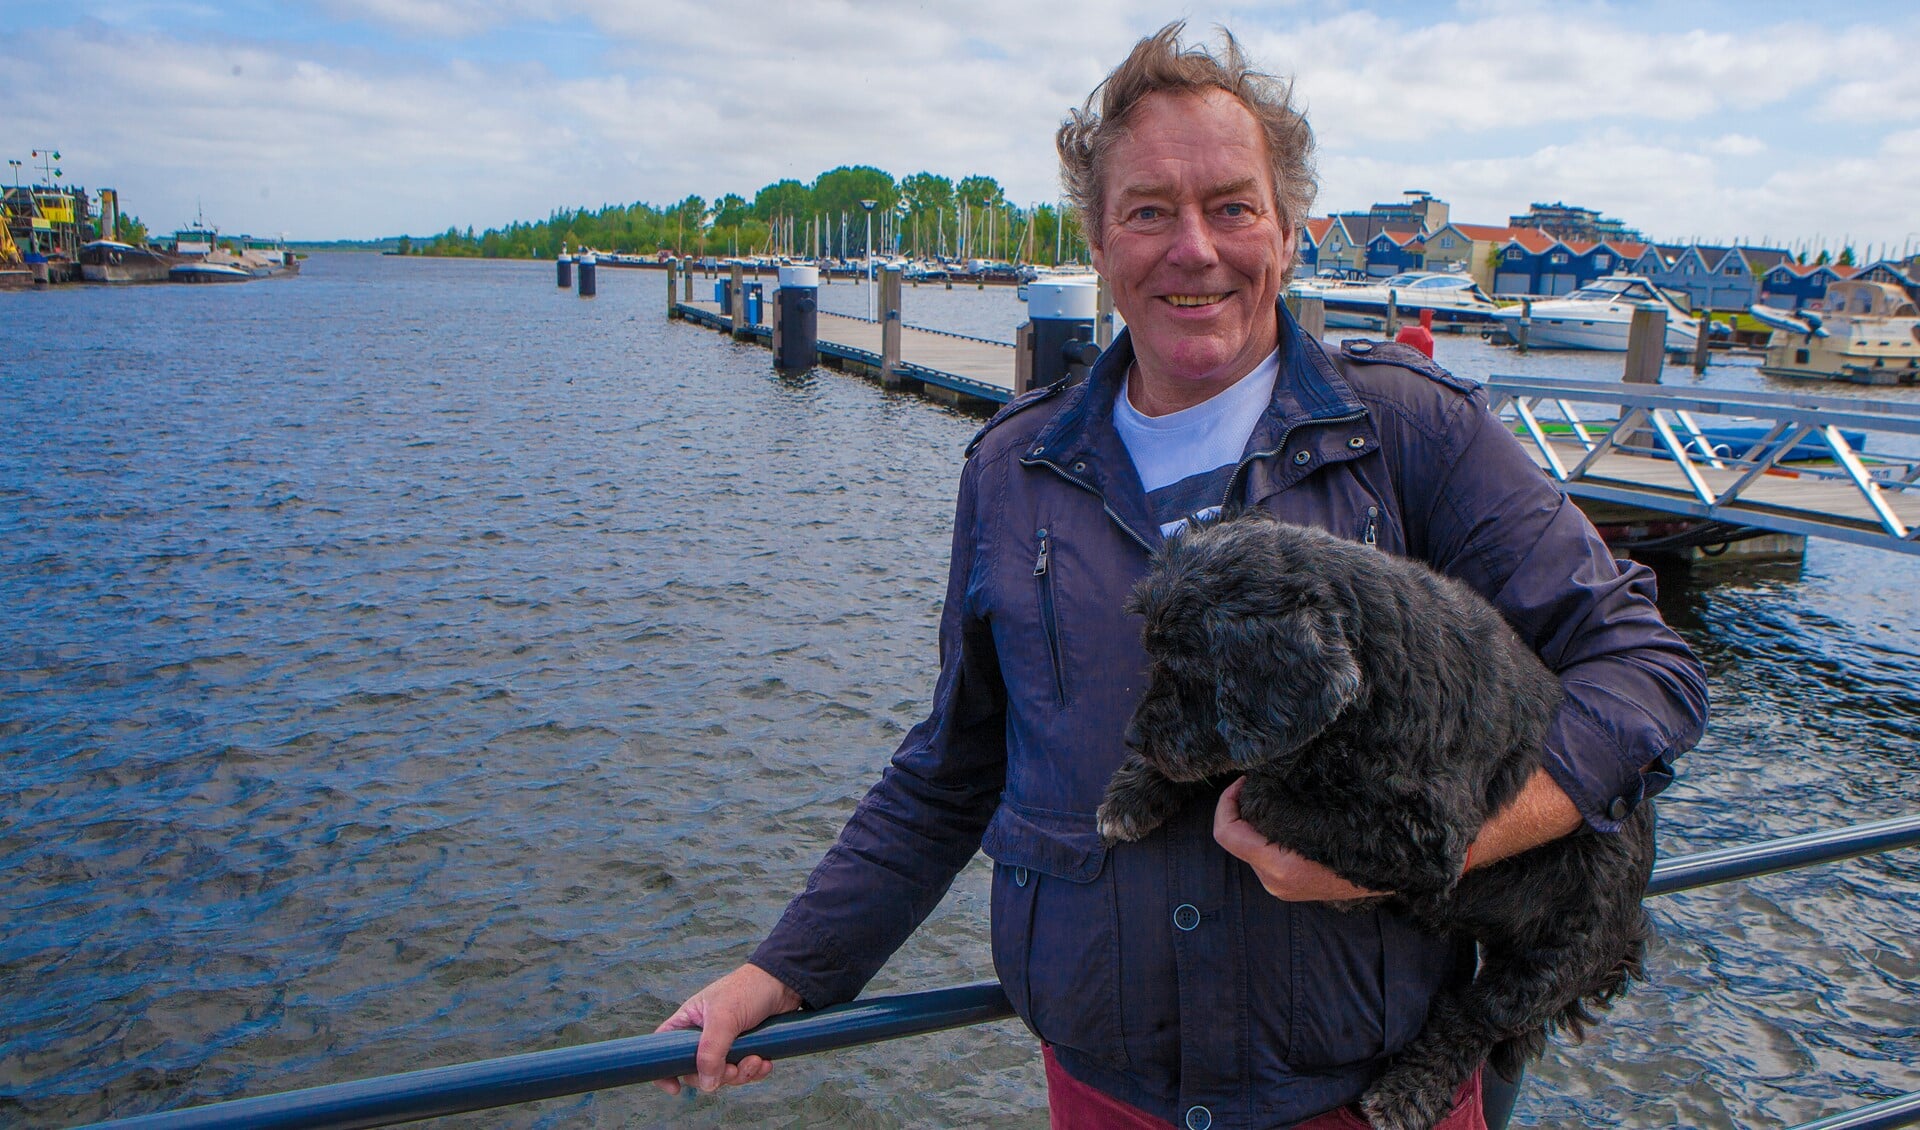 Organisator en openwaterzwemmer Hans Koster met zijn trouwe metgezel Fritz bij de haven waar straks weer gezwommen wordt.